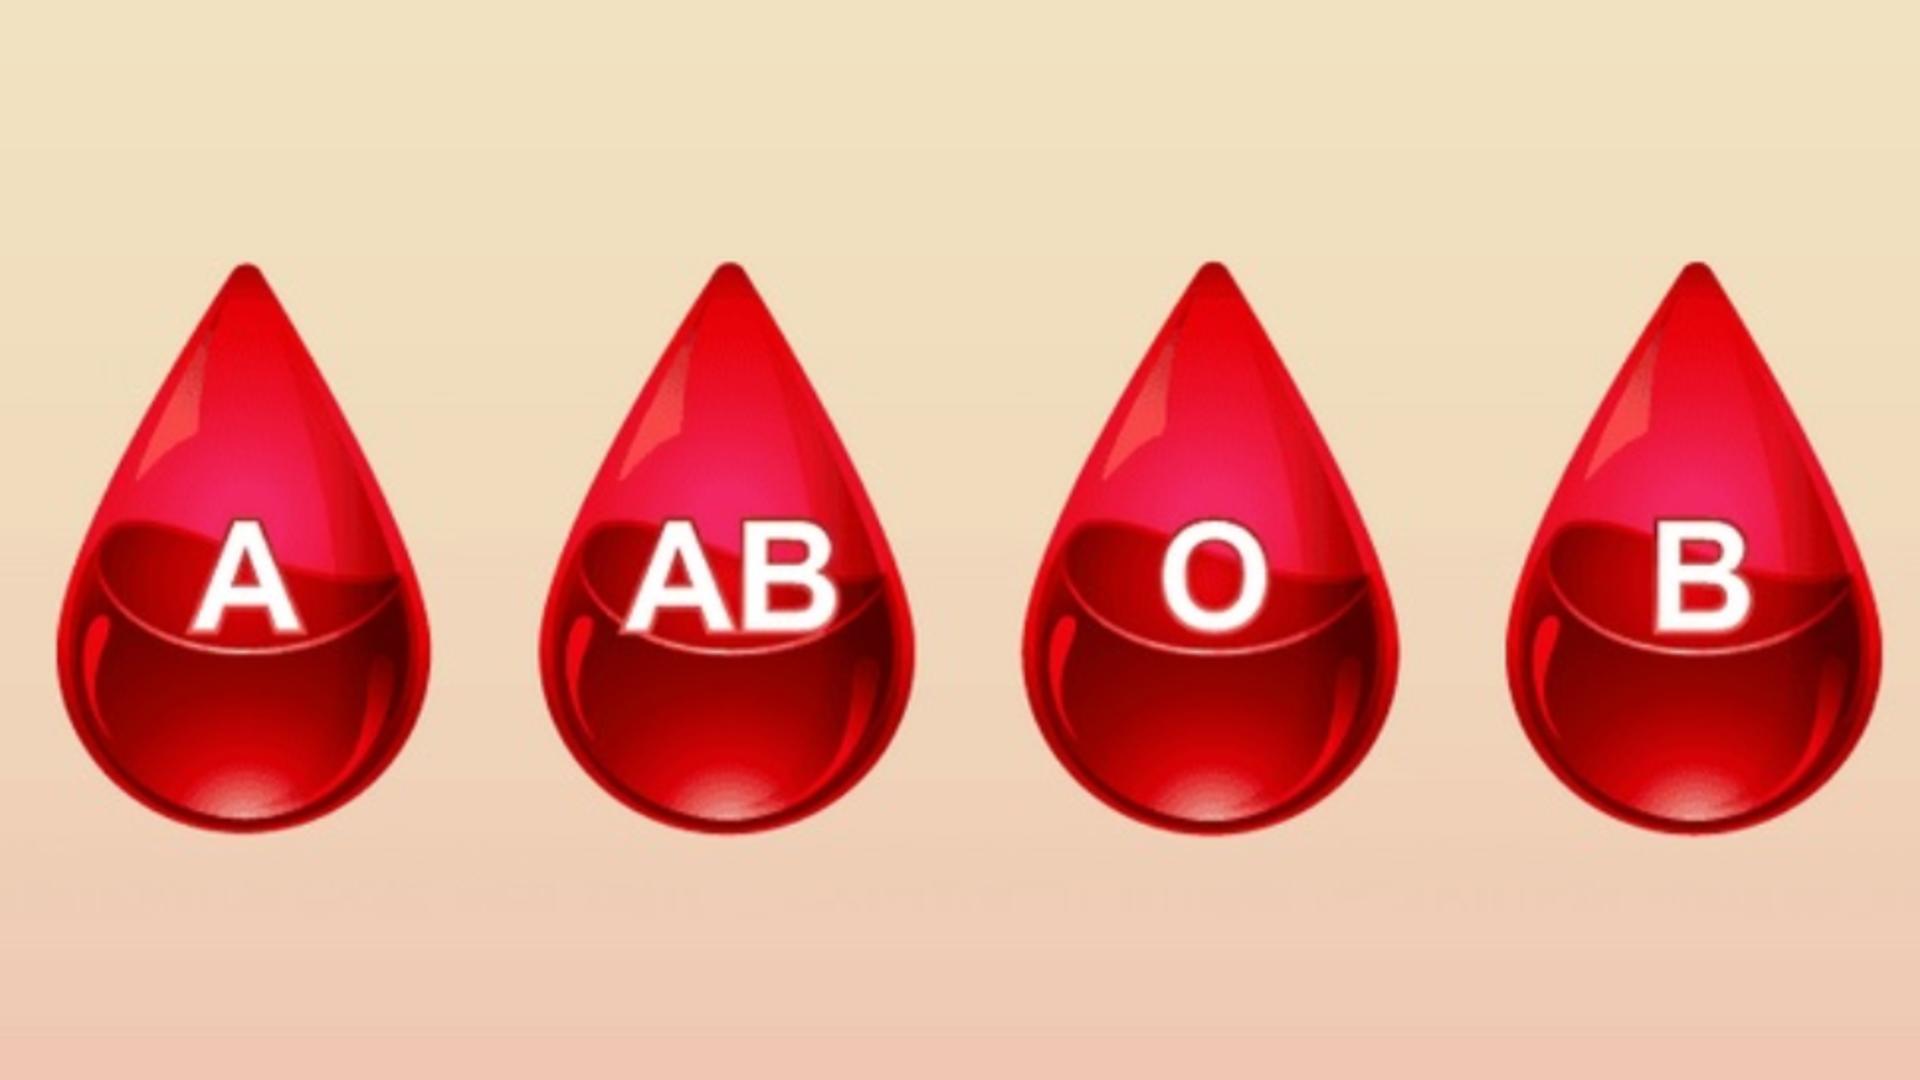 ما هي خصائص فصيلة دم b موجب